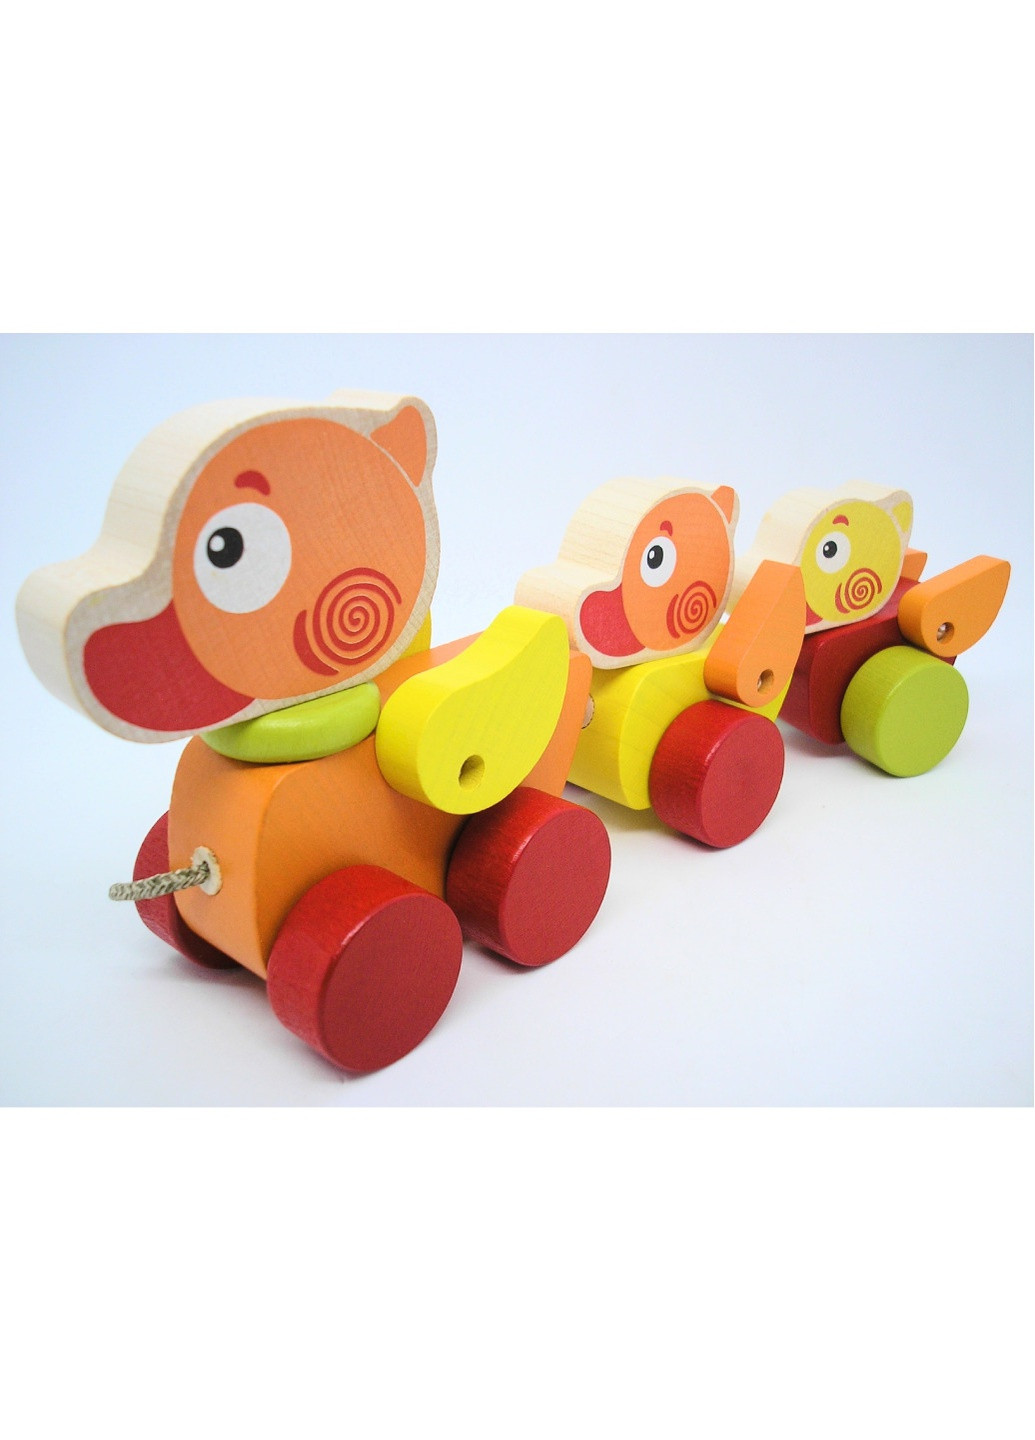 Игрушка деревянная детская разноцветная развивающая каталка странствующие утята на шнурочке Cubika (259793923)